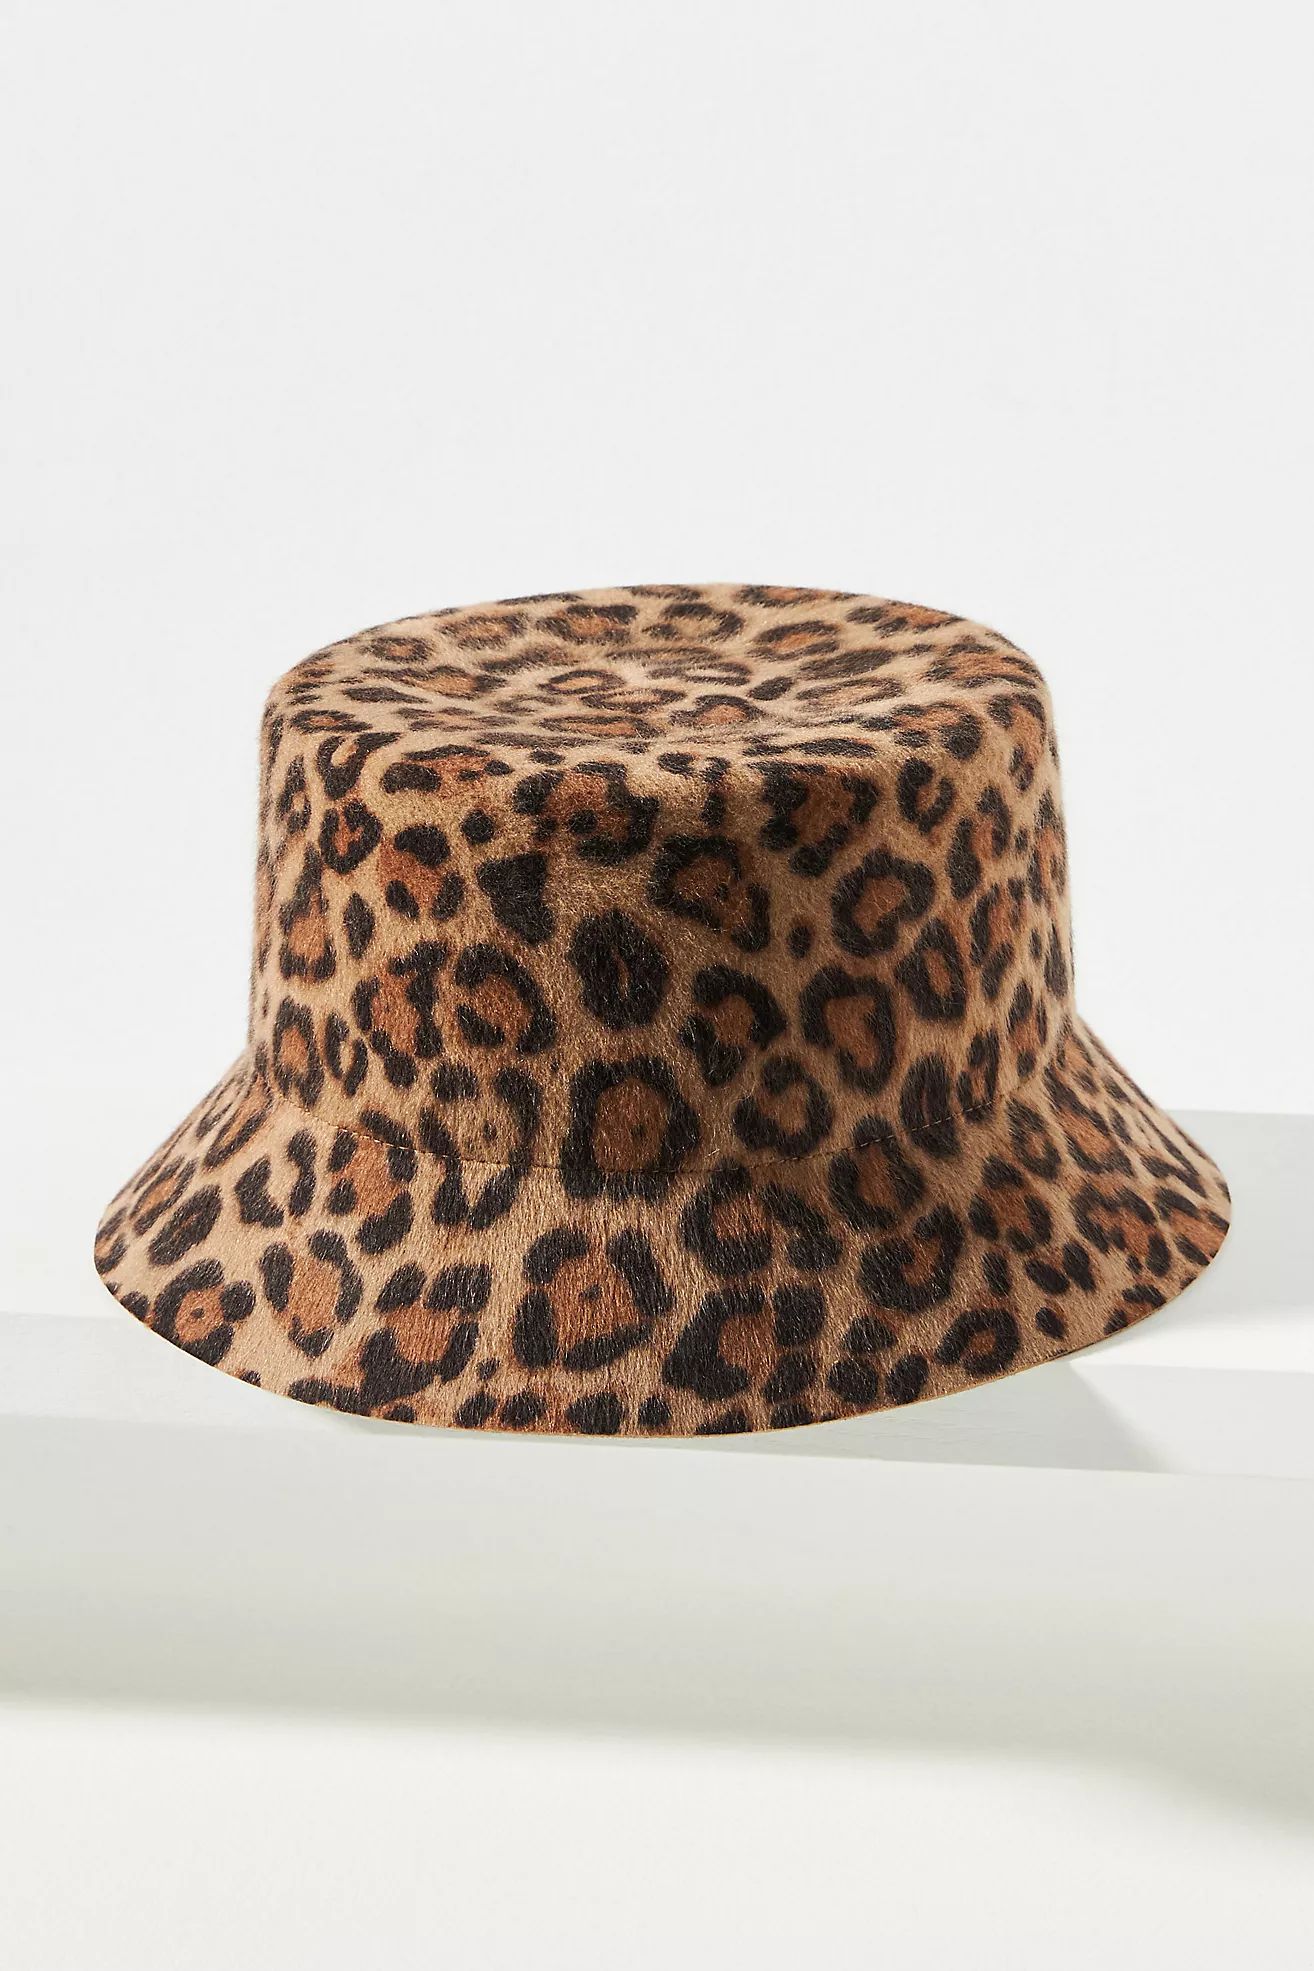 Wyeth Cheetah Felt Bucket Hat | Anthropologie (US)